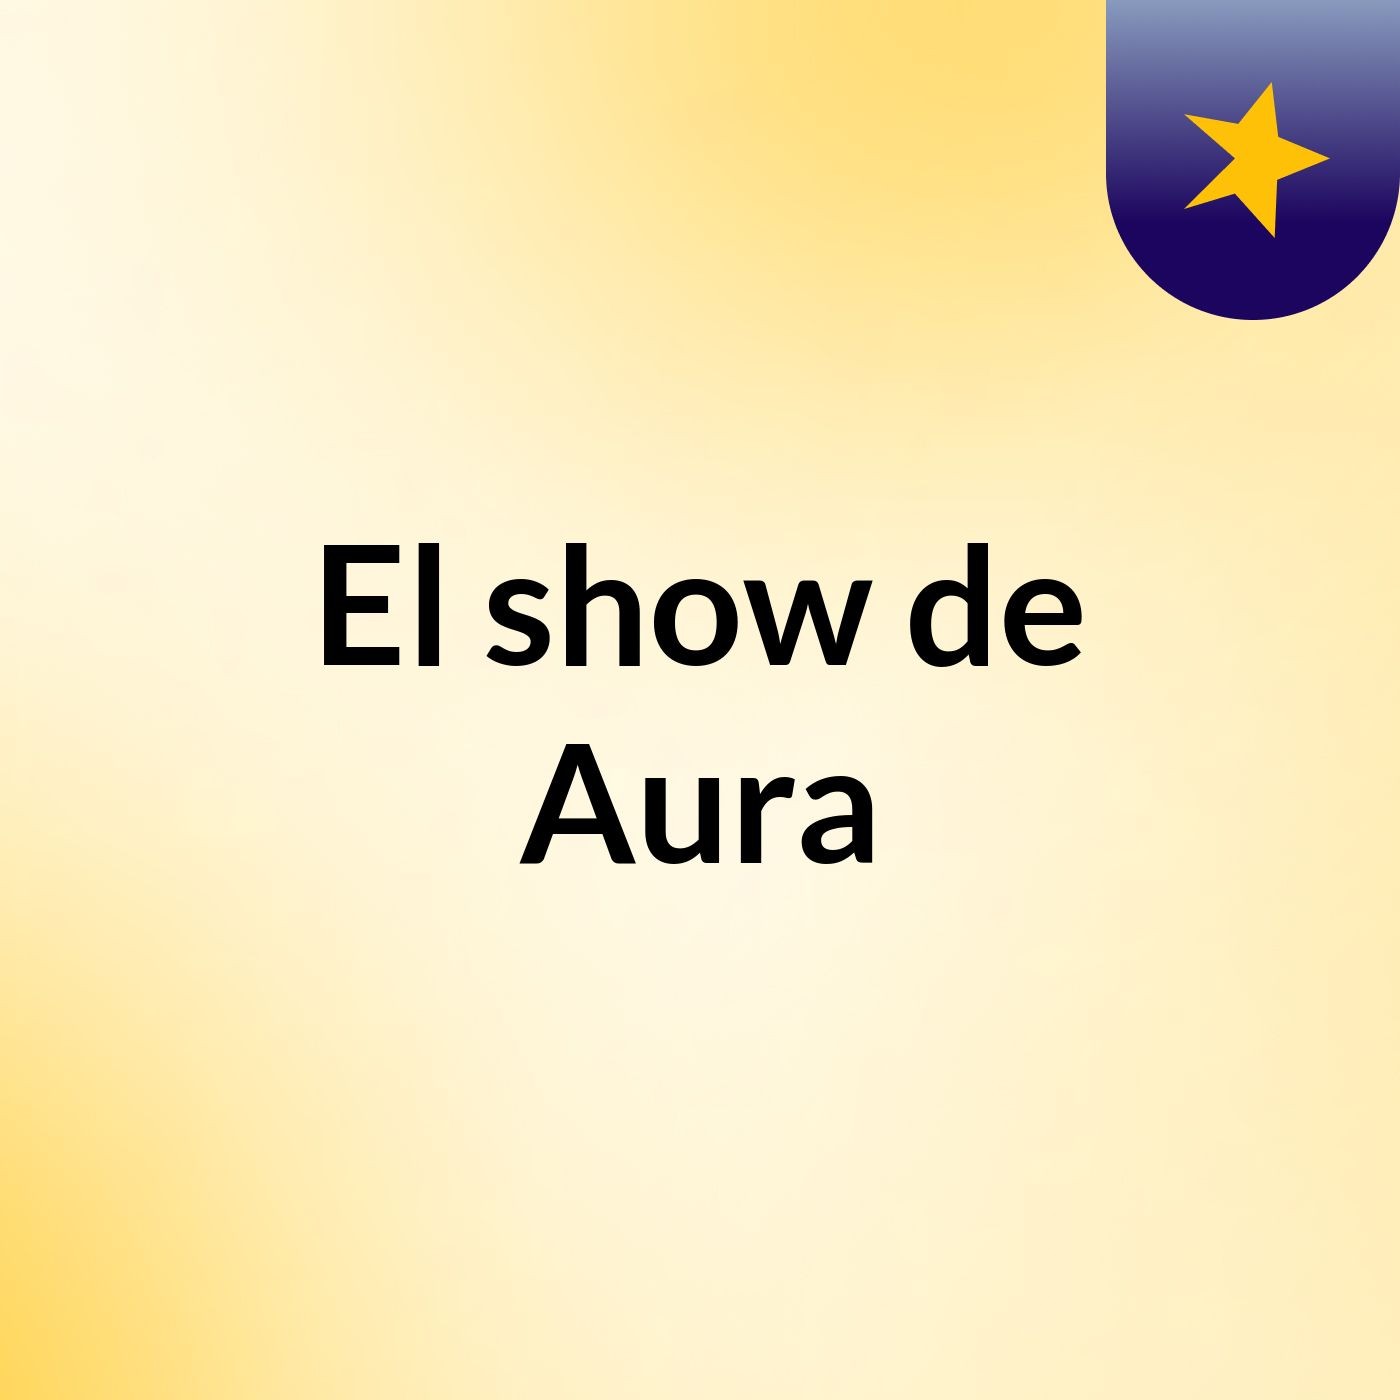 El show de Aura